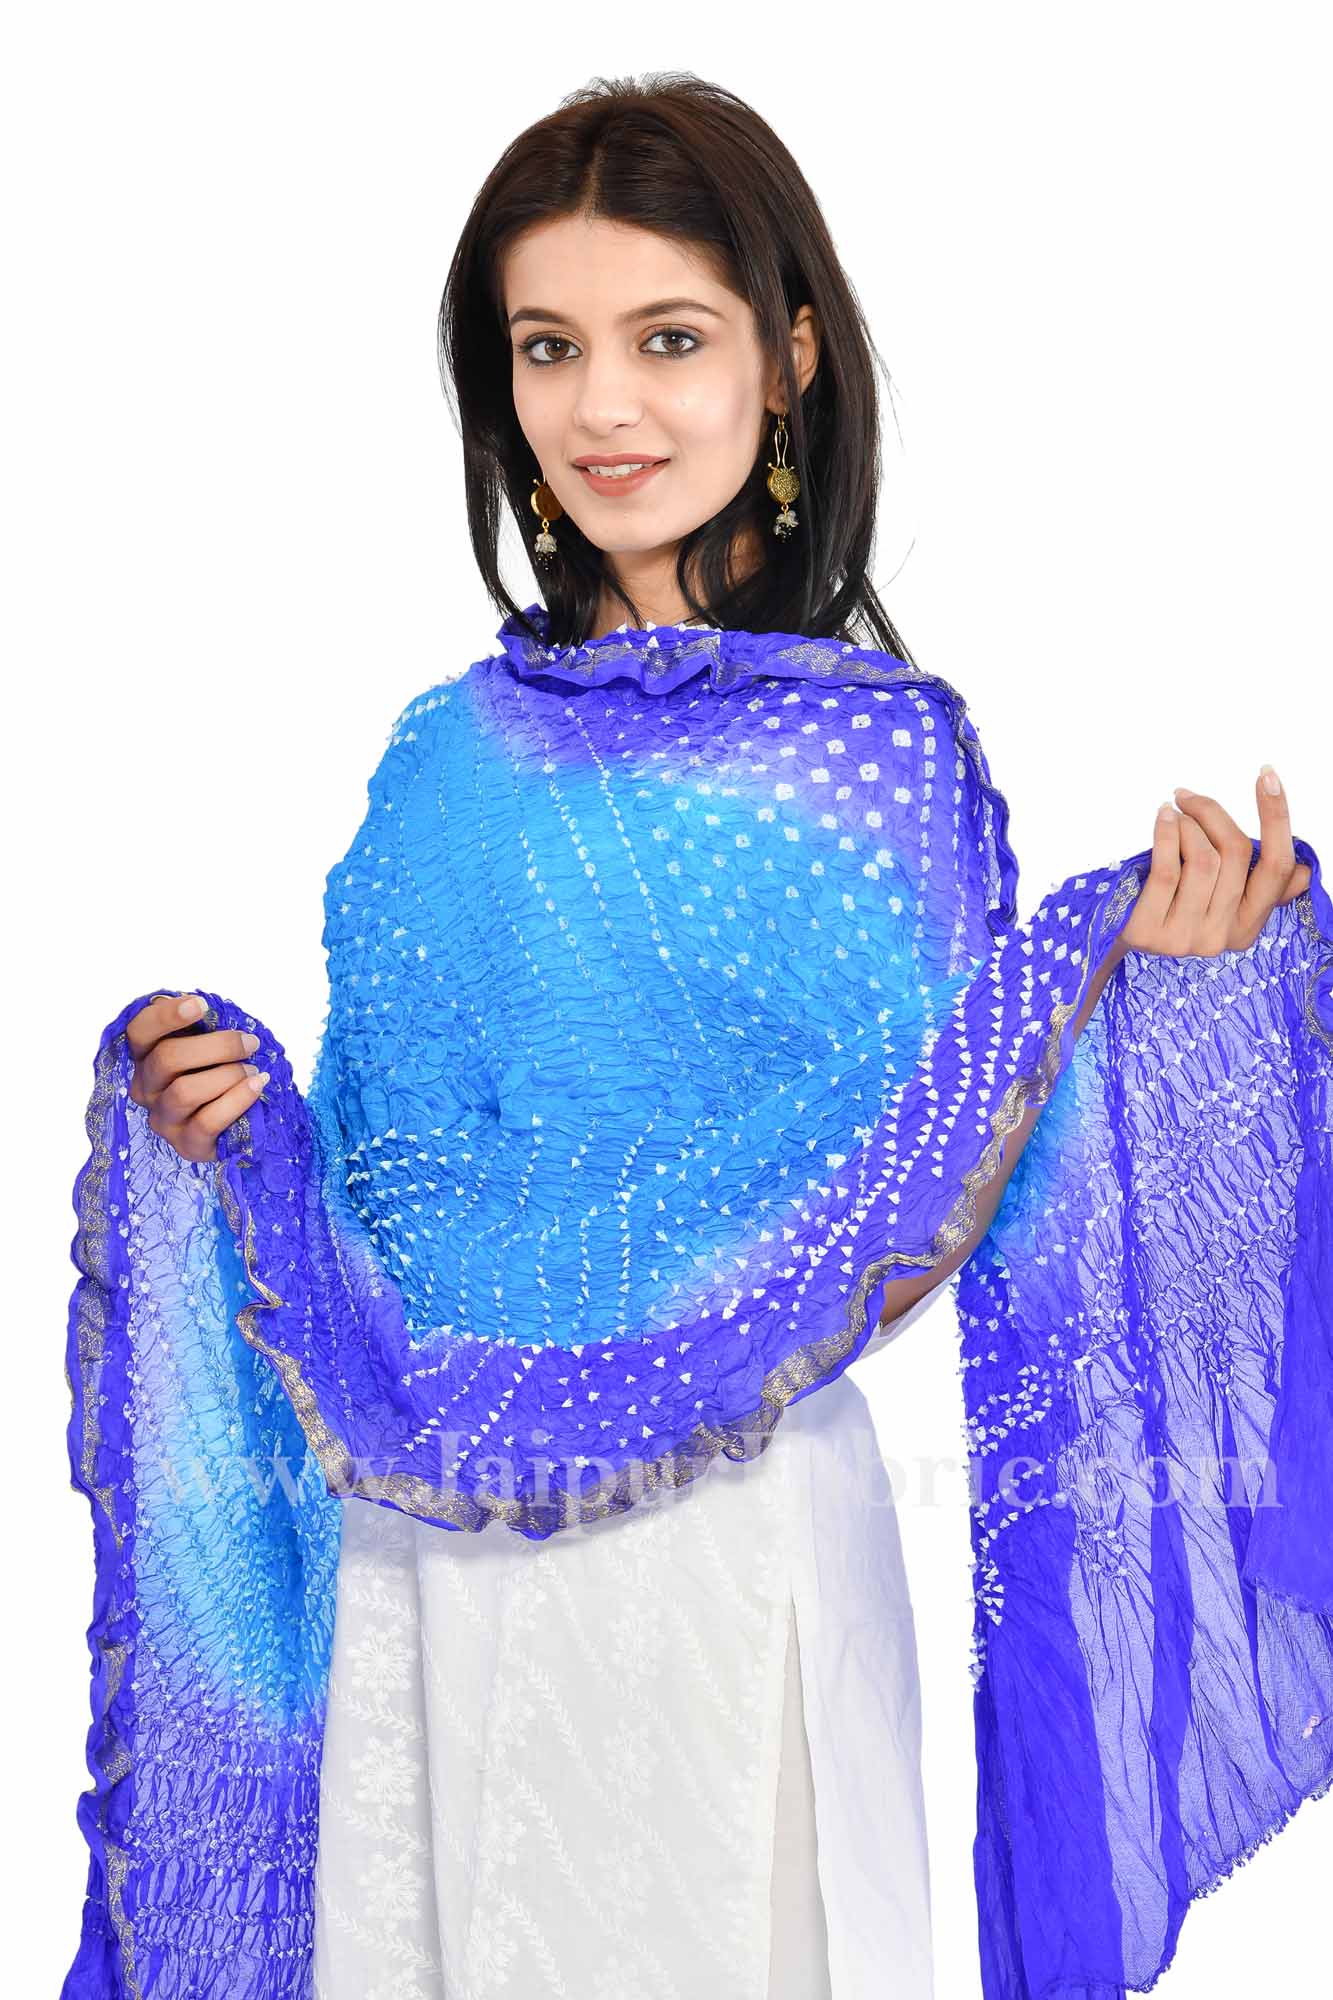 Zari Border Blue Colored Jaipuri Rajasthani Art Silk Bandhni Bandhej Heavy Dupatta Chunni